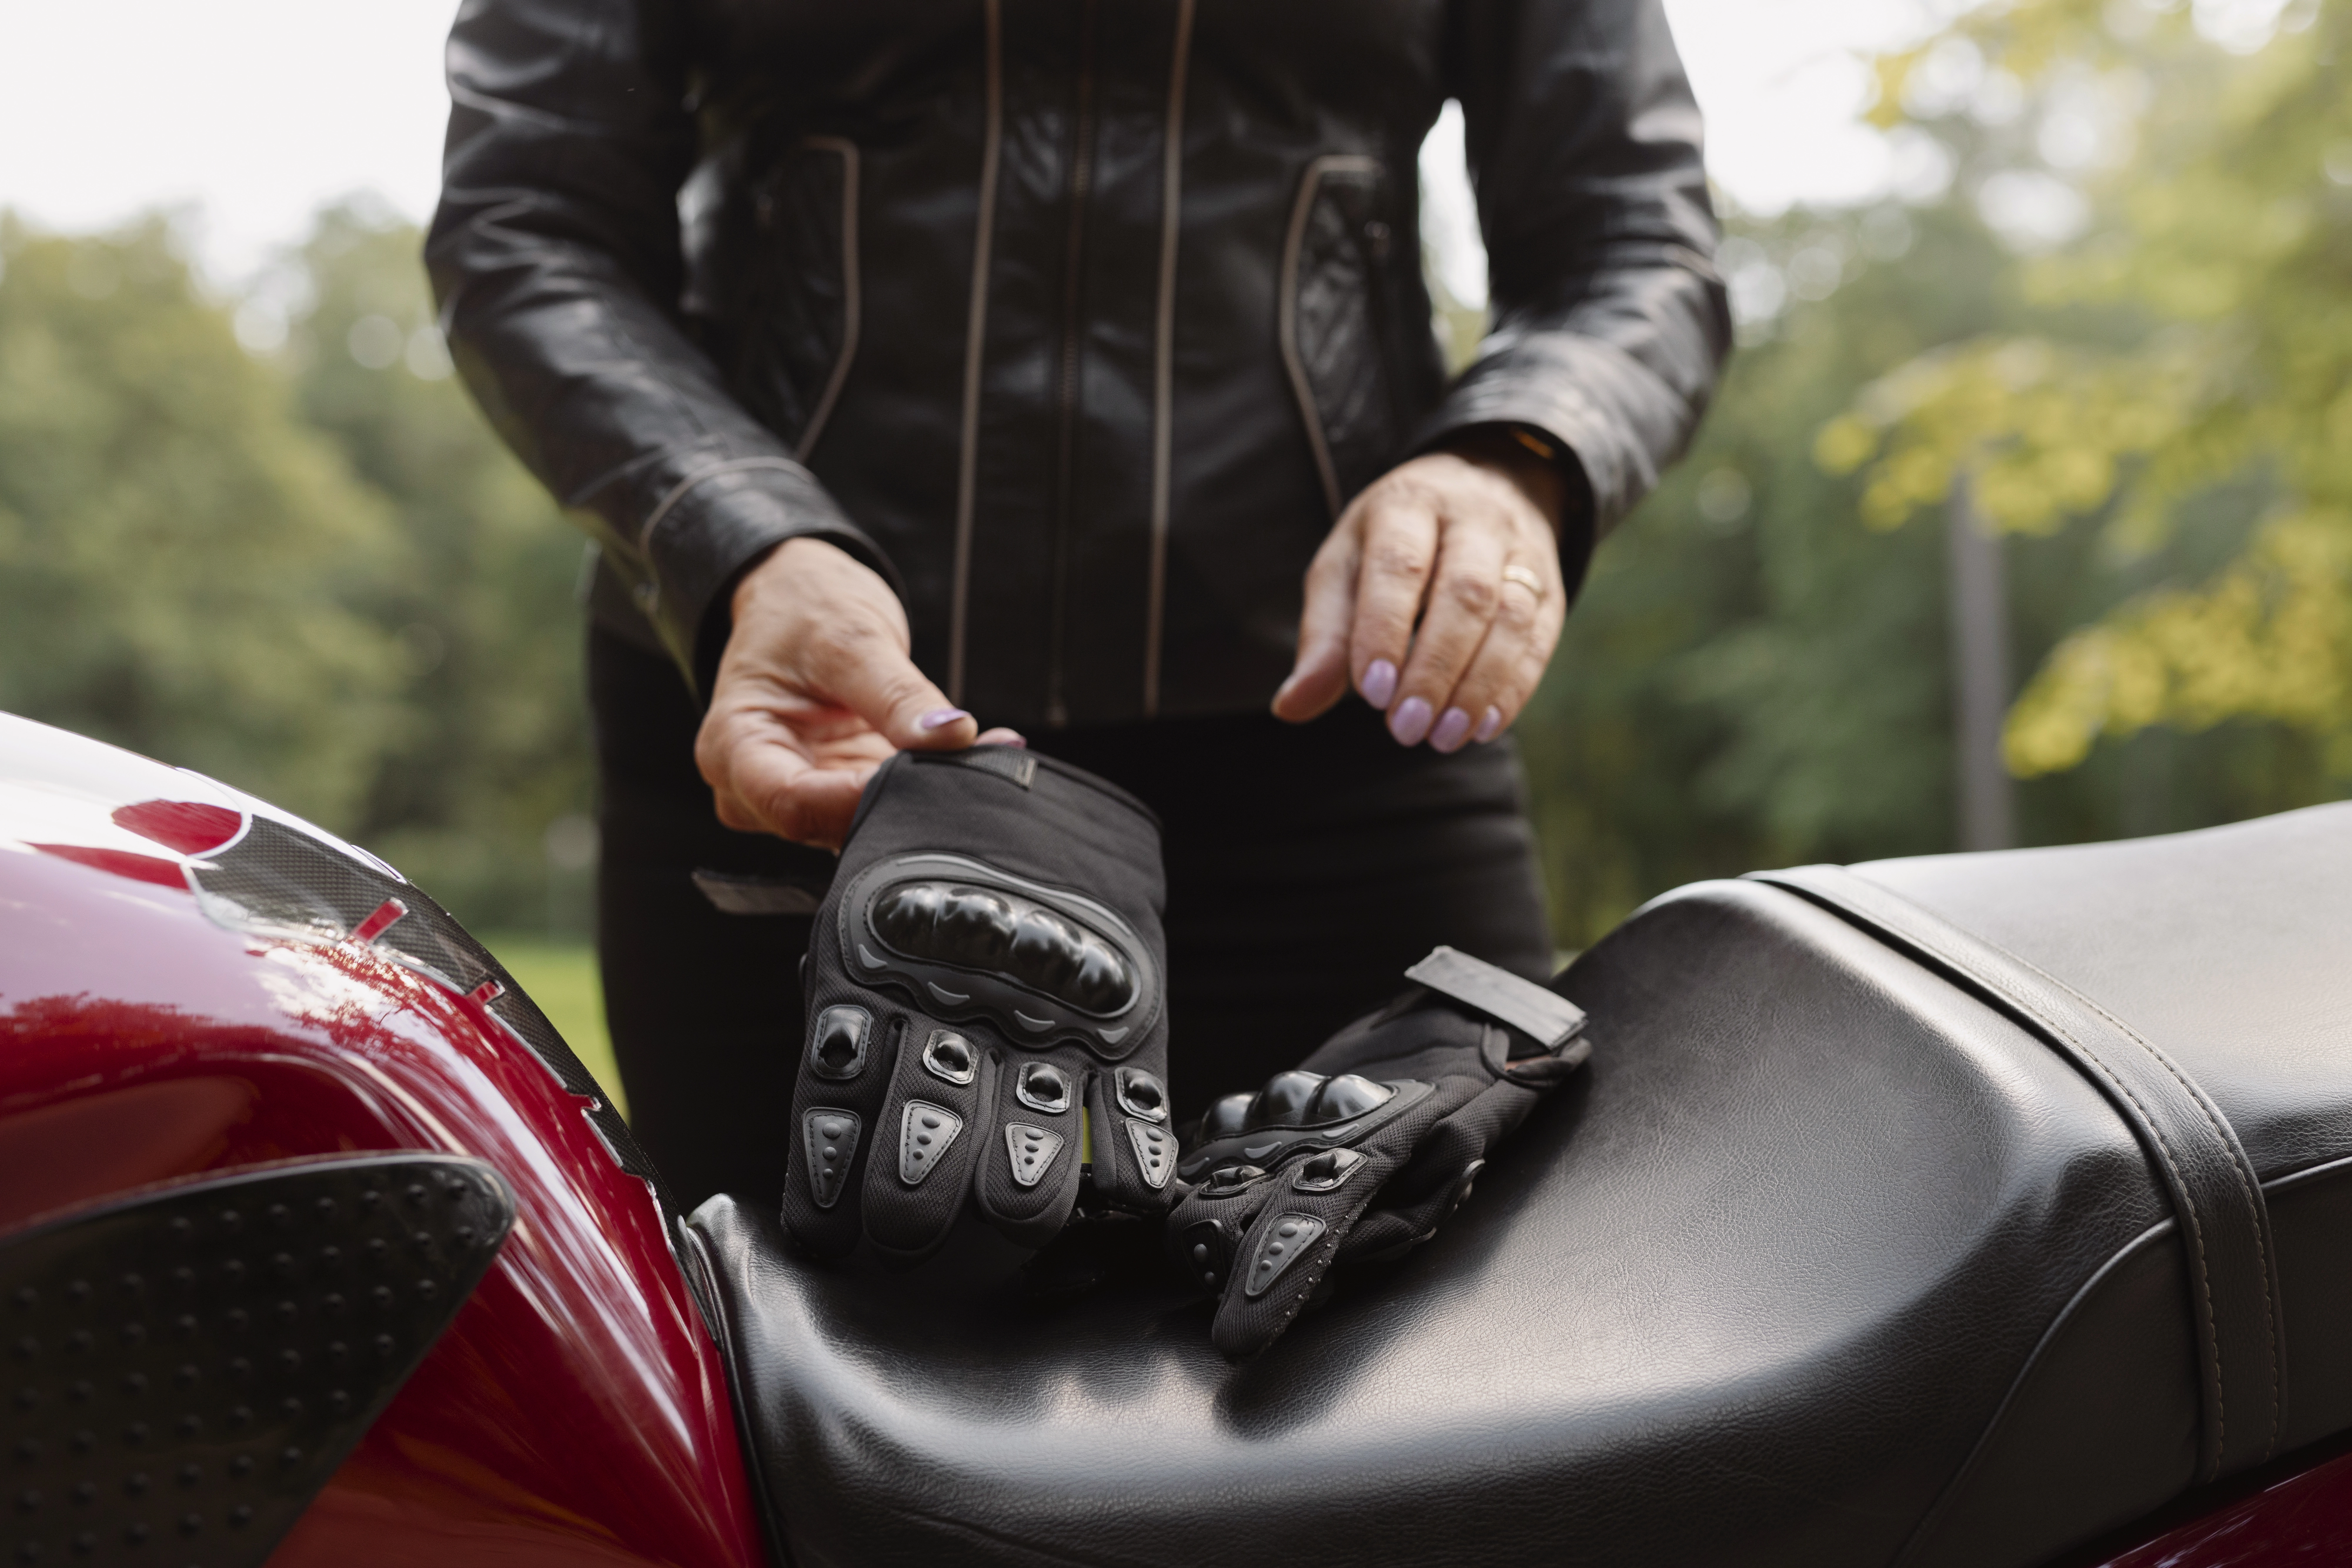 Opter pour une assurance moto à Marignane au tiers permet de couvrir les dommages causés à autrui, mais ne prend pas en charge les réparations de sa propre moto en cas d'accident.